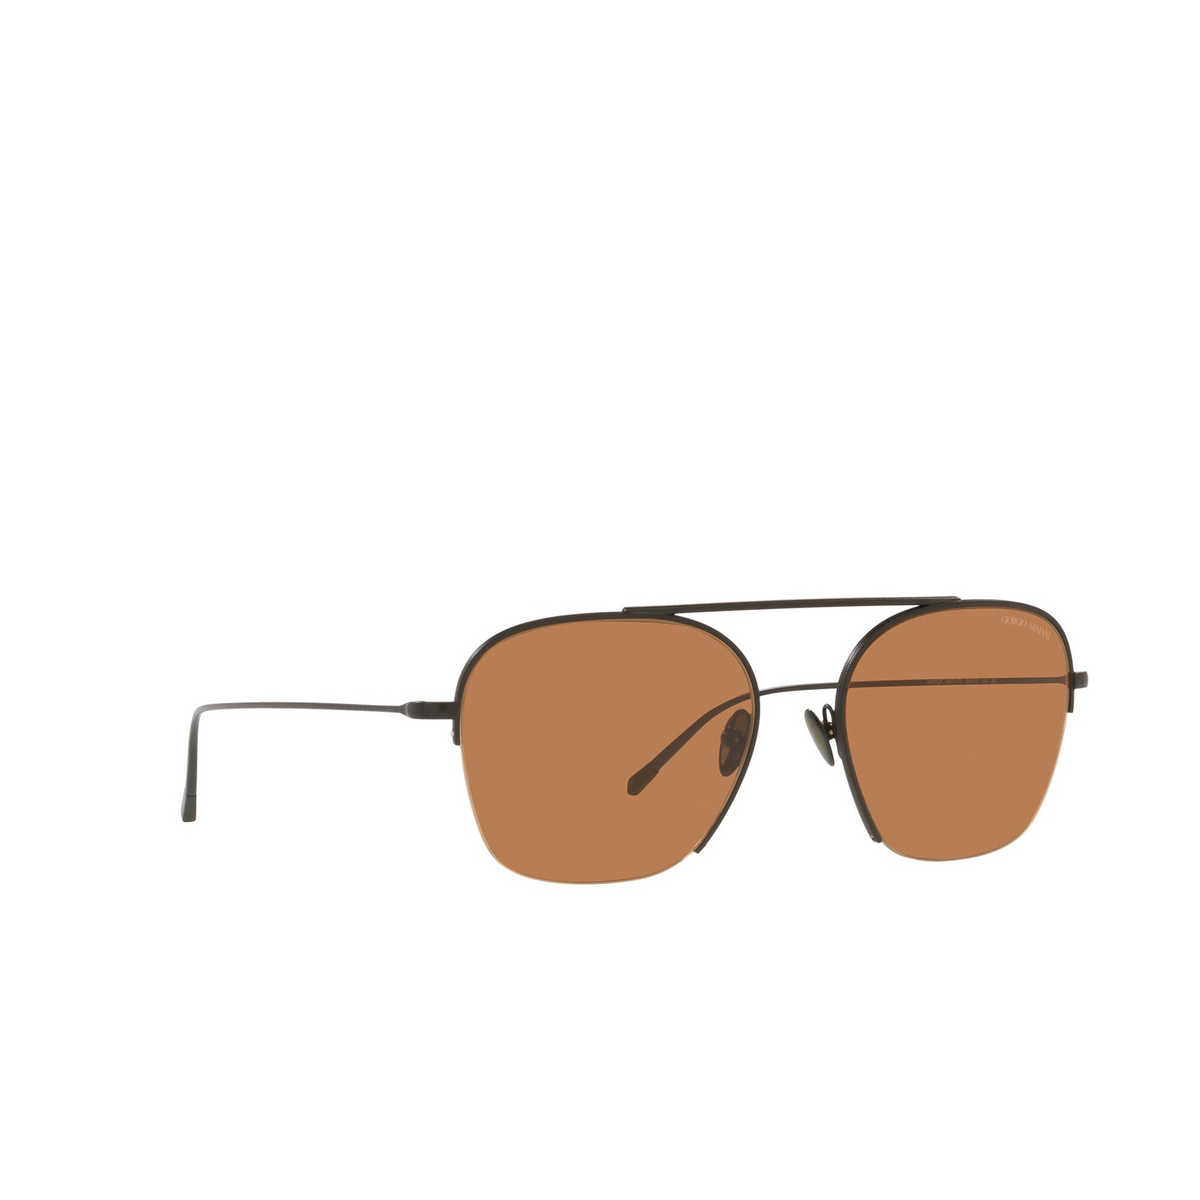 Giorgio Armani® Square Sunglasses: AR6124 color Matte Black 300173 - three-quarters view.